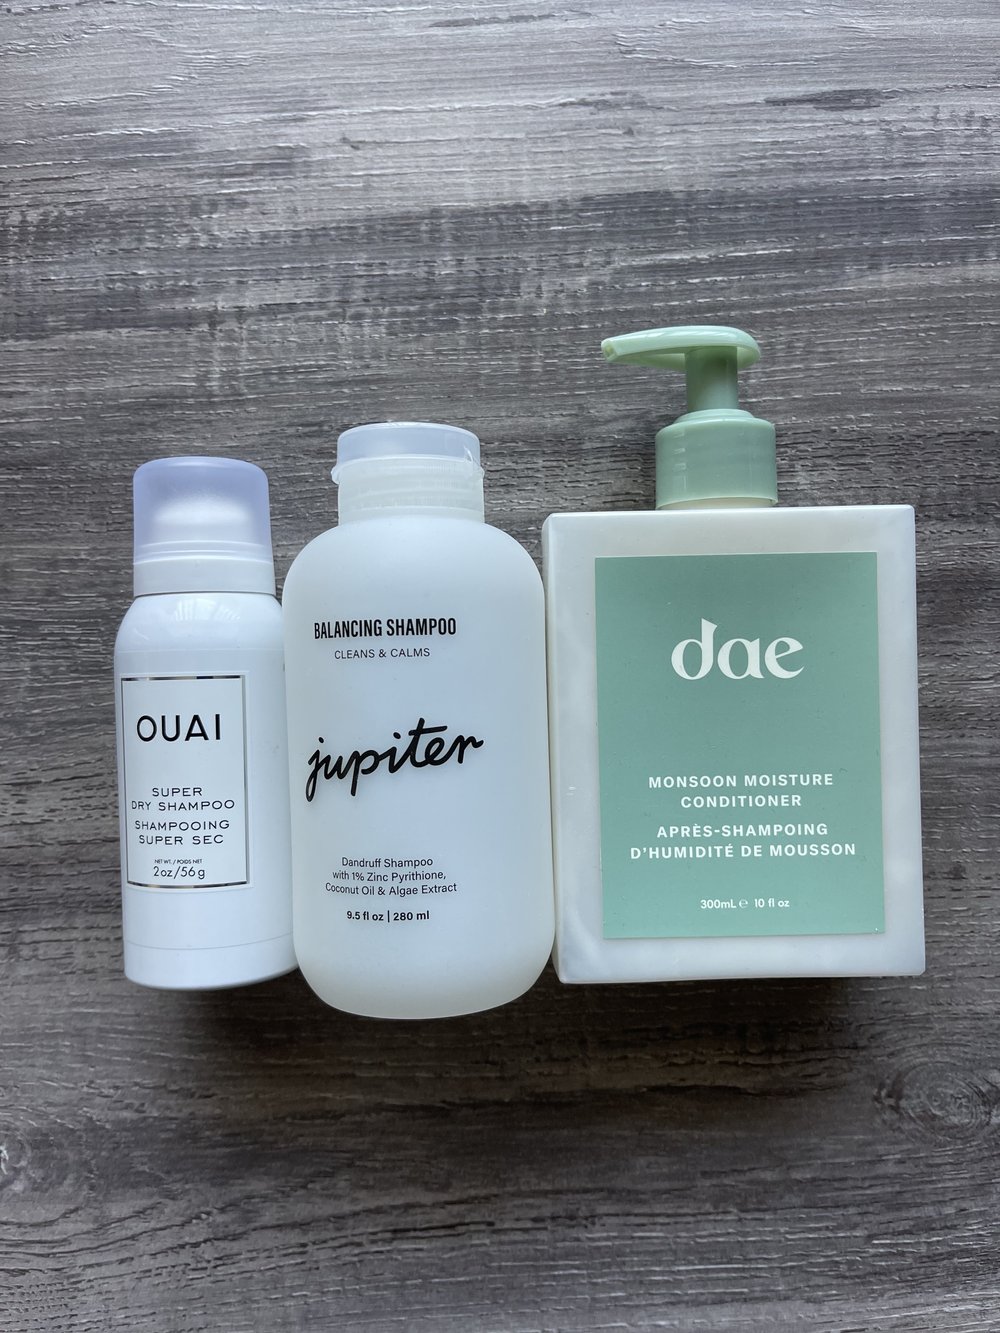 jupiter-balancing-shampoo-review.jpg